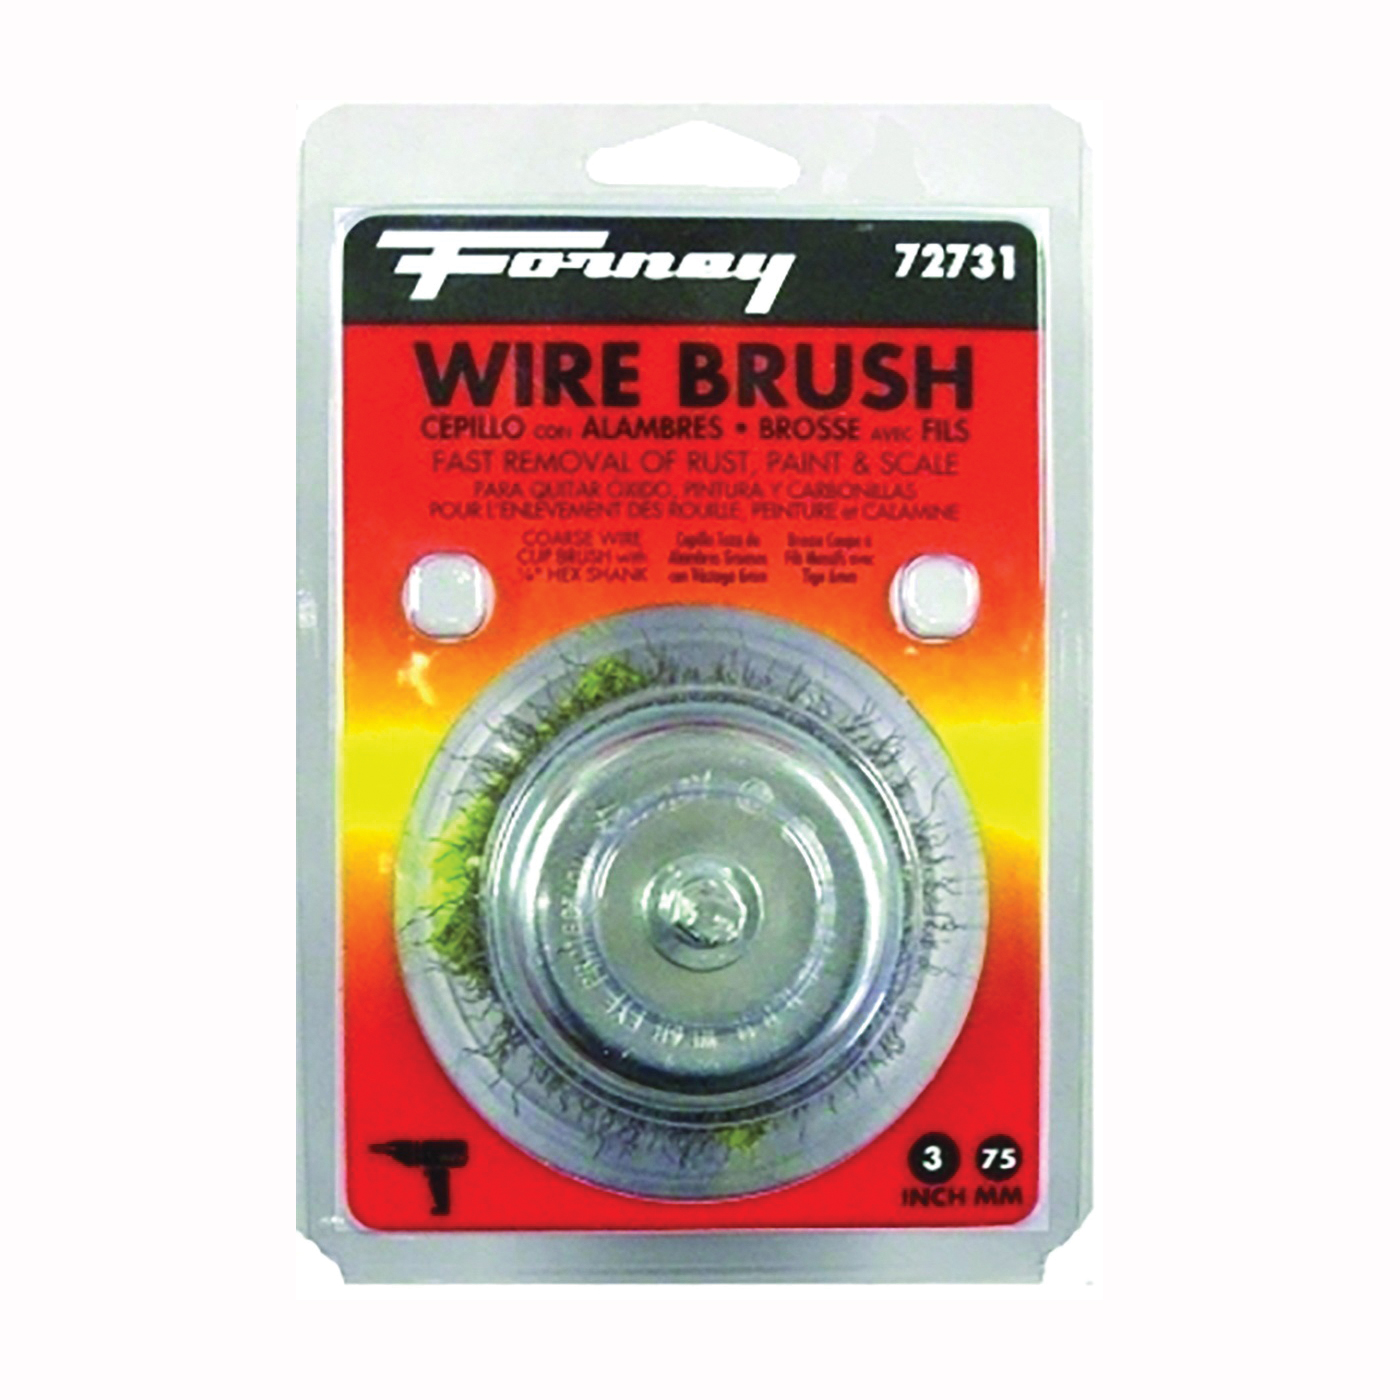 72731 Wire Cup Brush, 3 in Dia, 0.012 in Dia Bristle, Steel Bristle